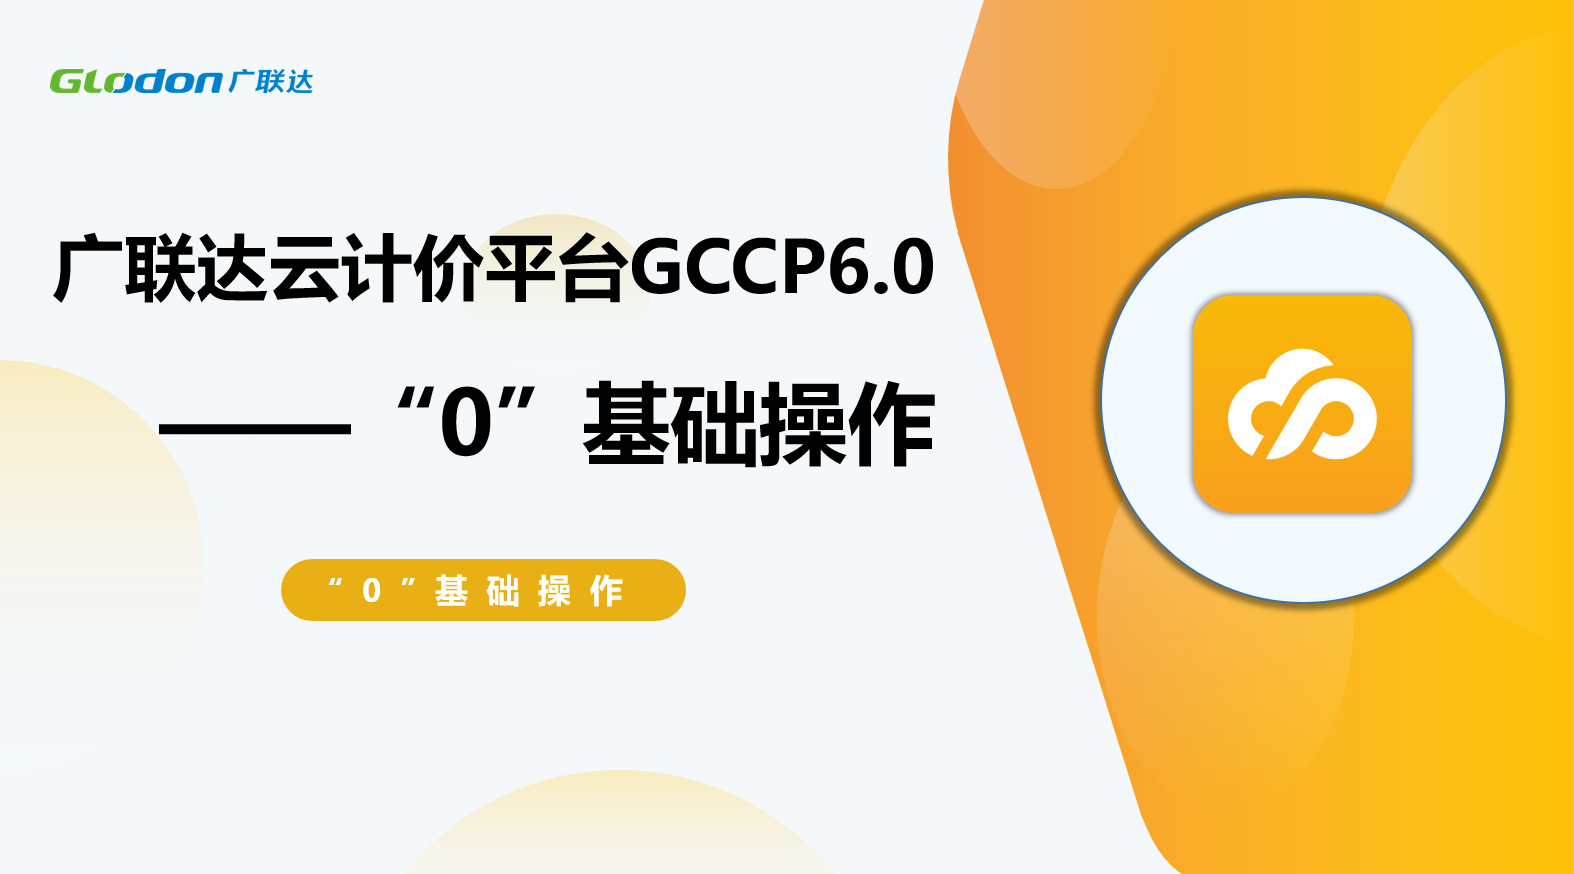 廣聯達云計價平臺GCCP6.0 “0”基礎操作